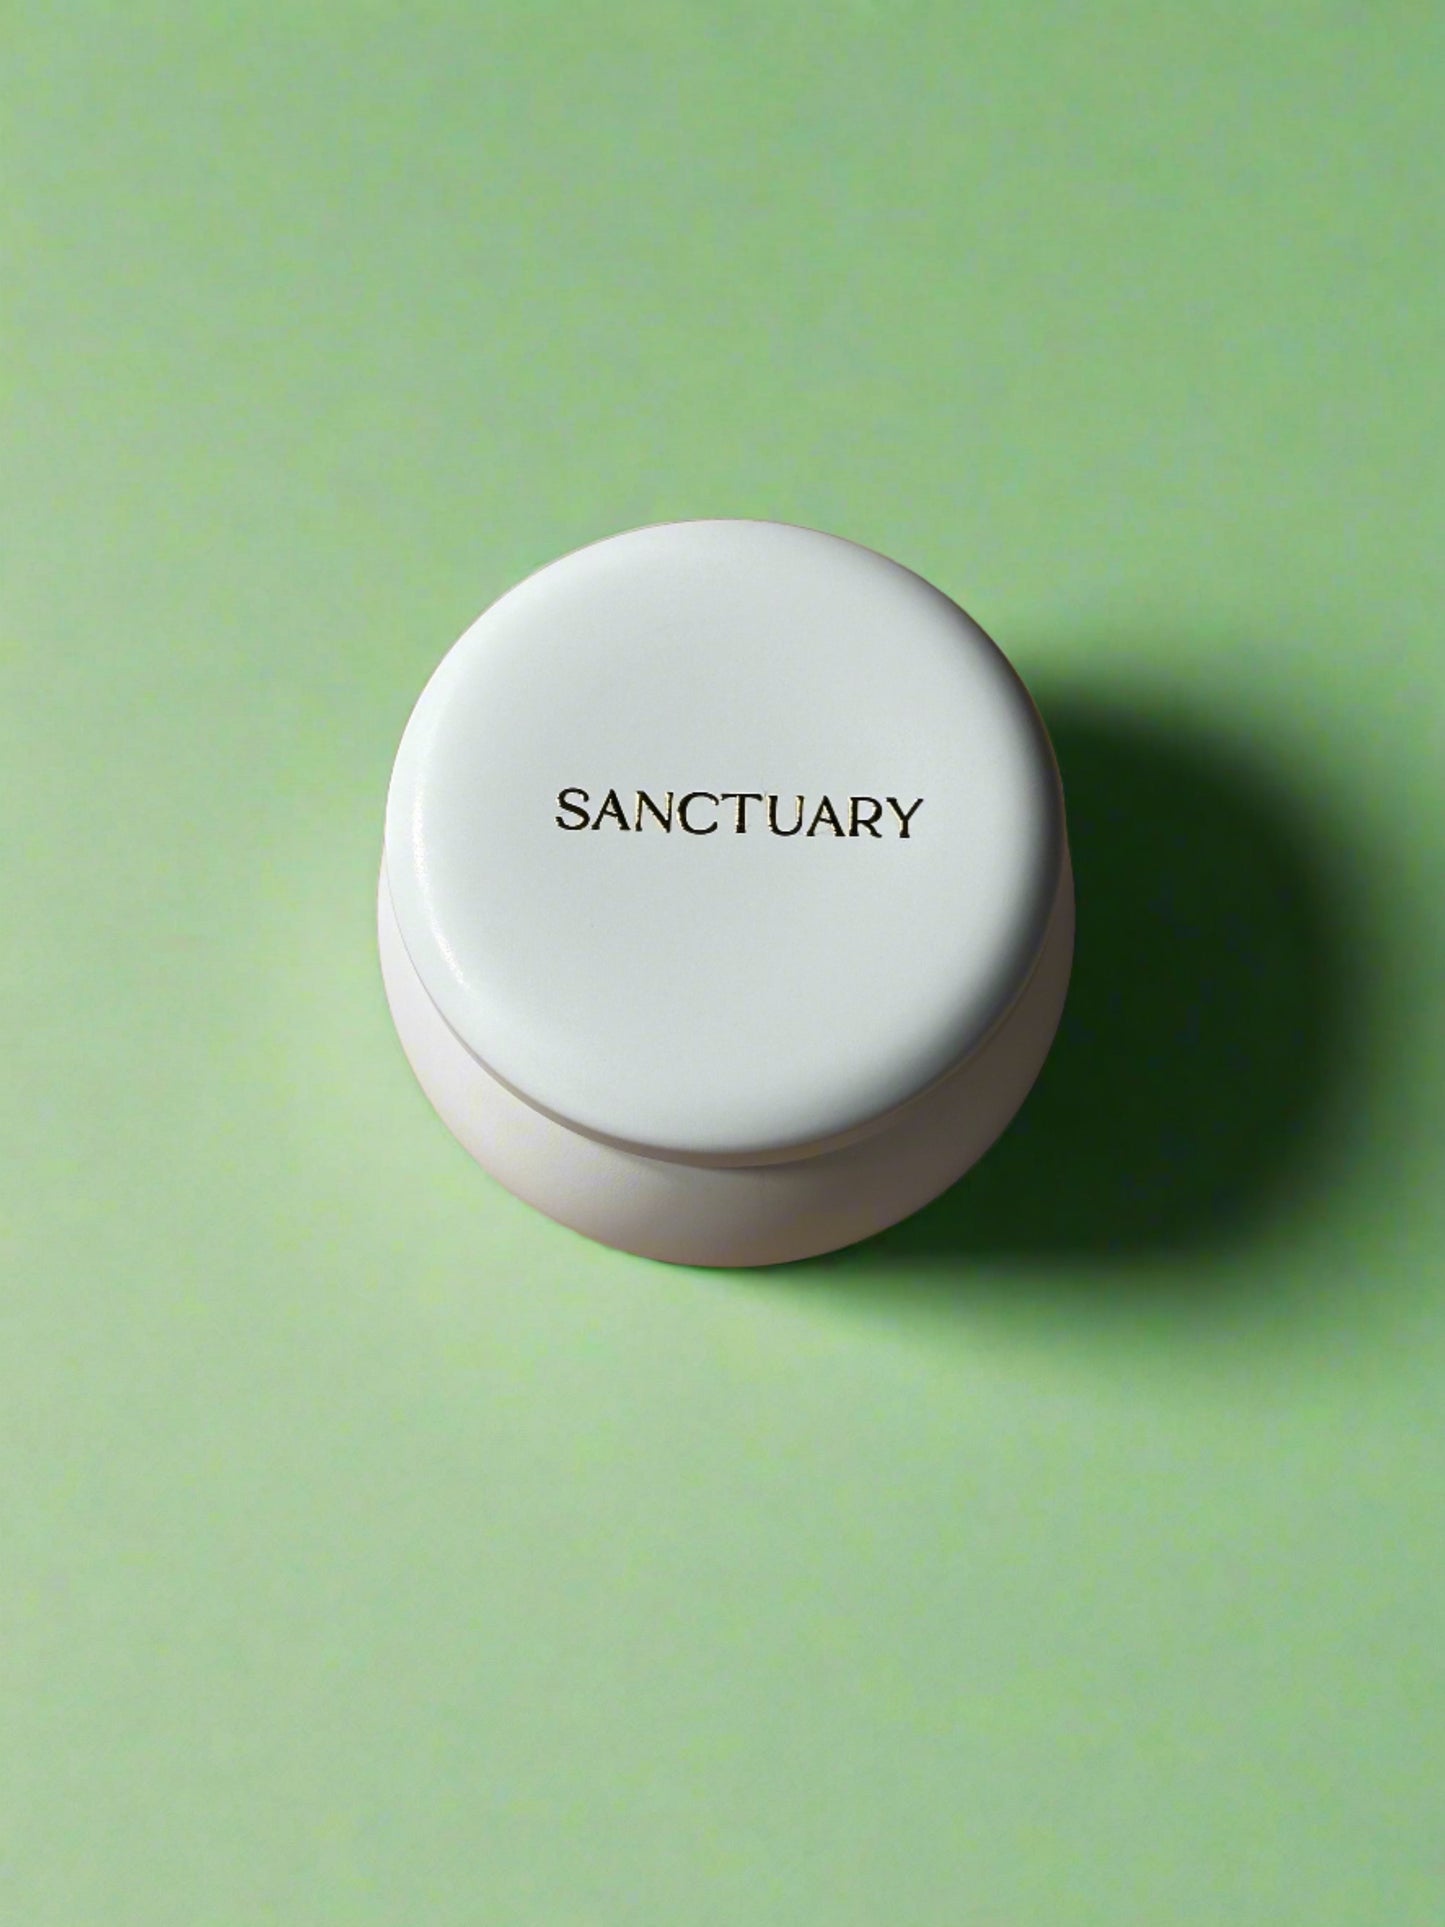 Sanctuary Mini Candle - 4 oz (wholesale)